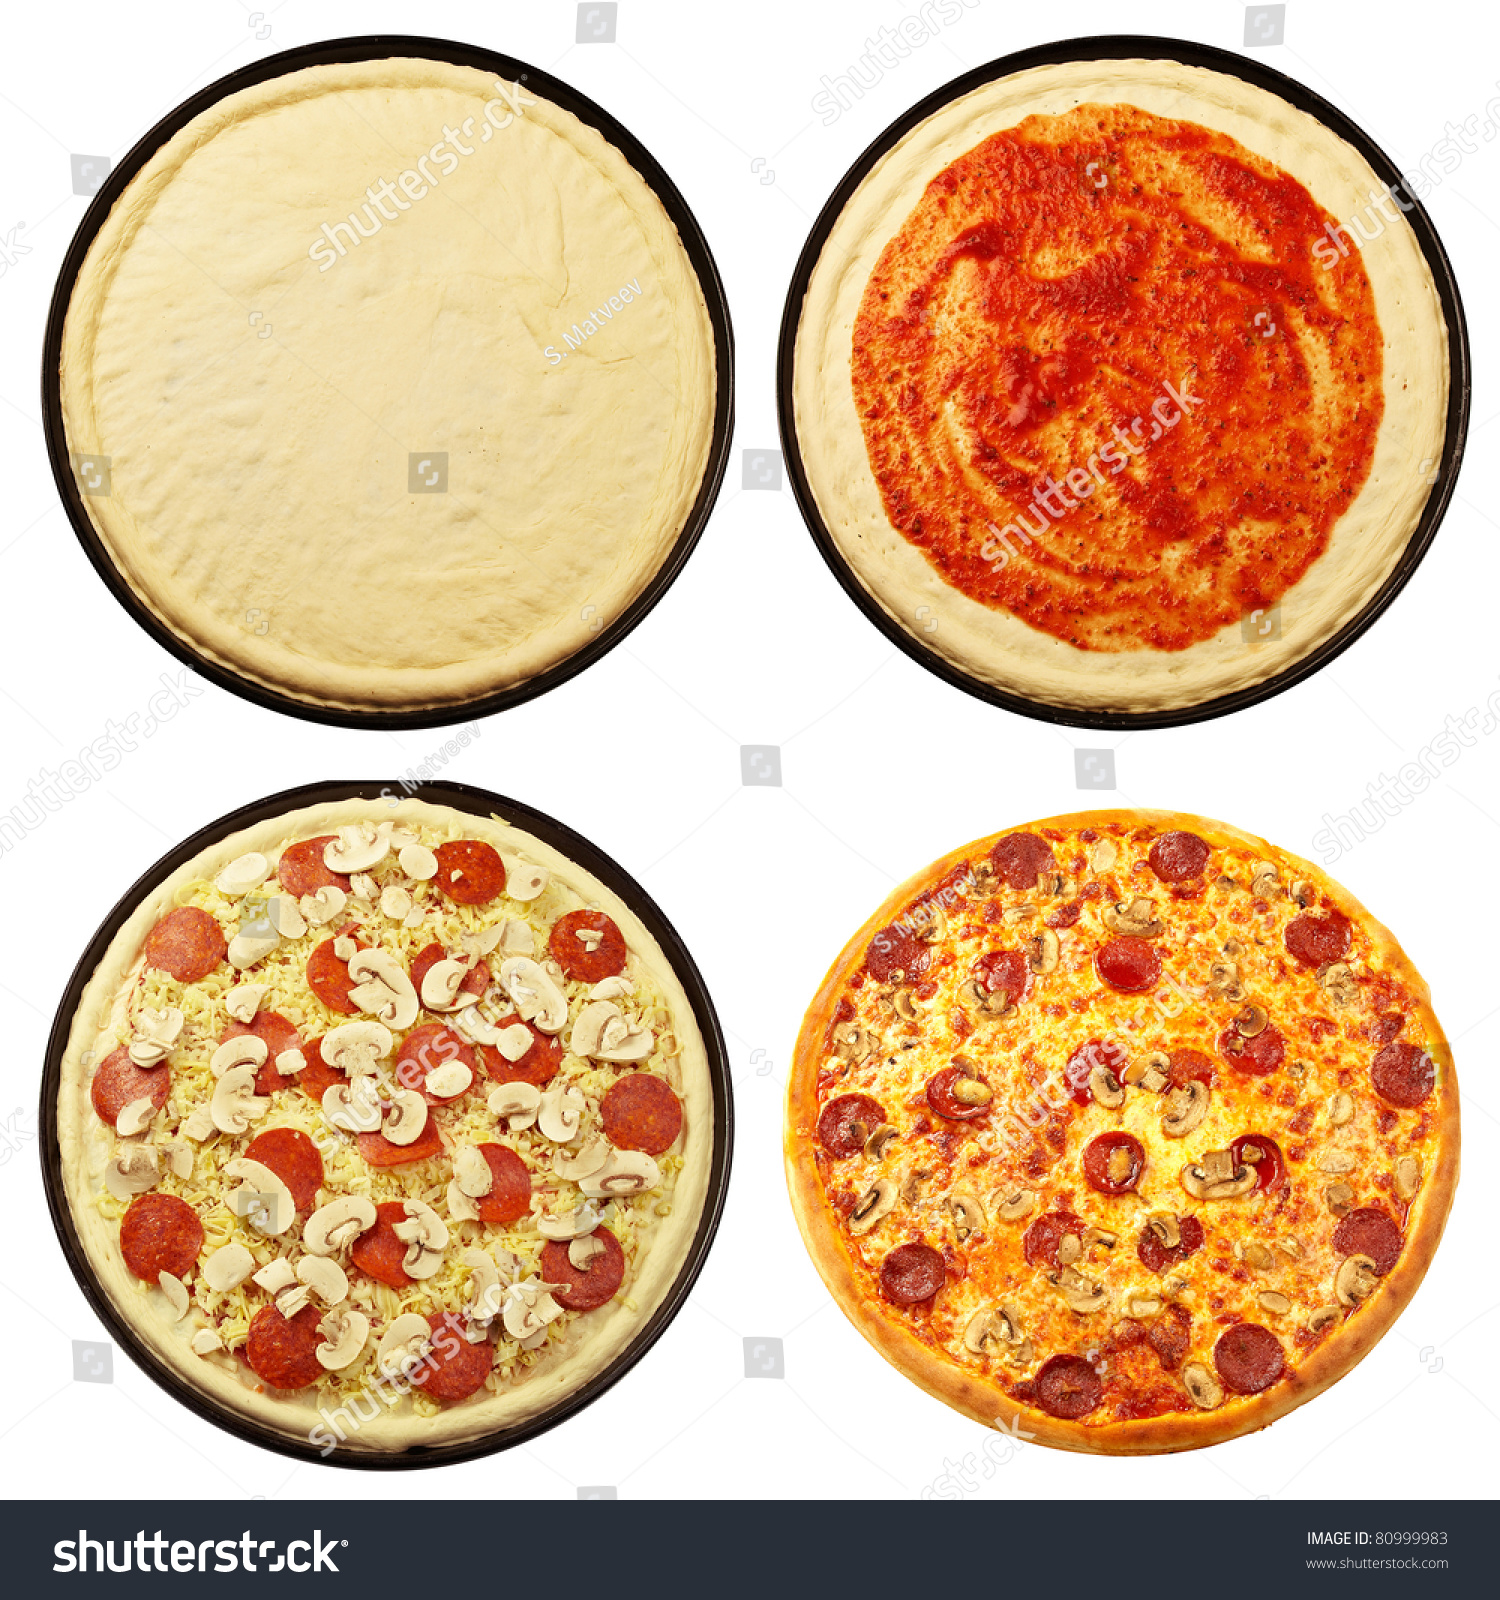 как кладут ингридиенты в пиццу фото 13